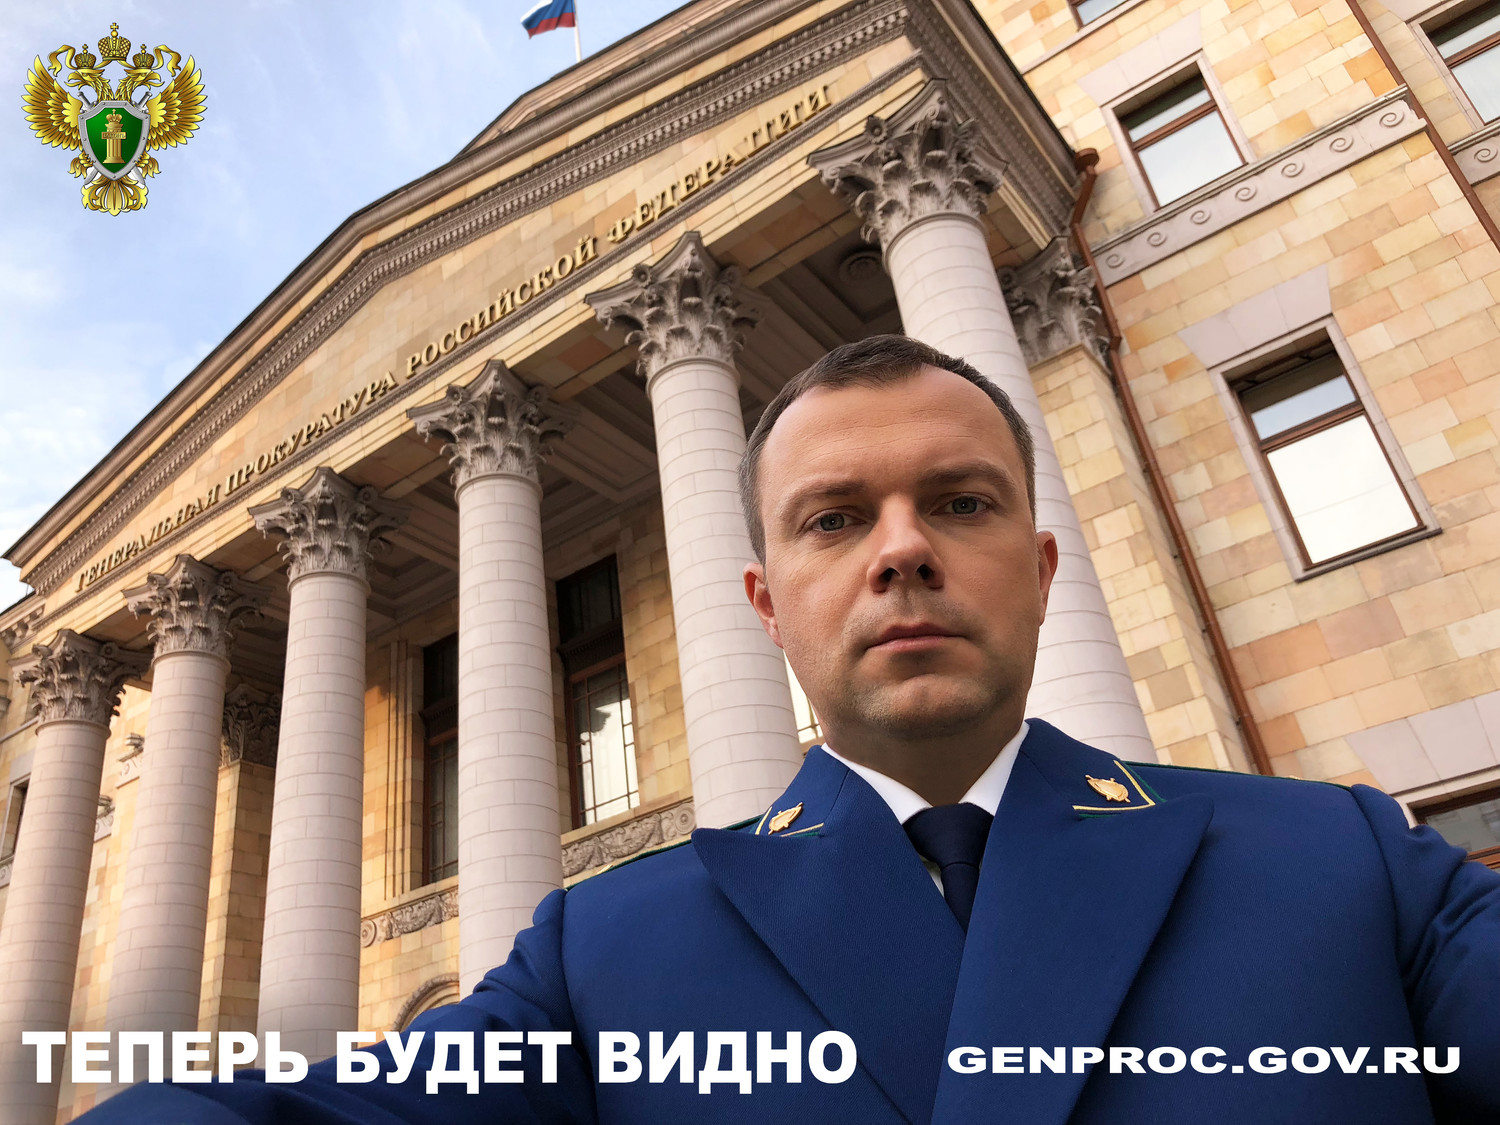 Стартует новый проект Генеральной прокуратуры РФ